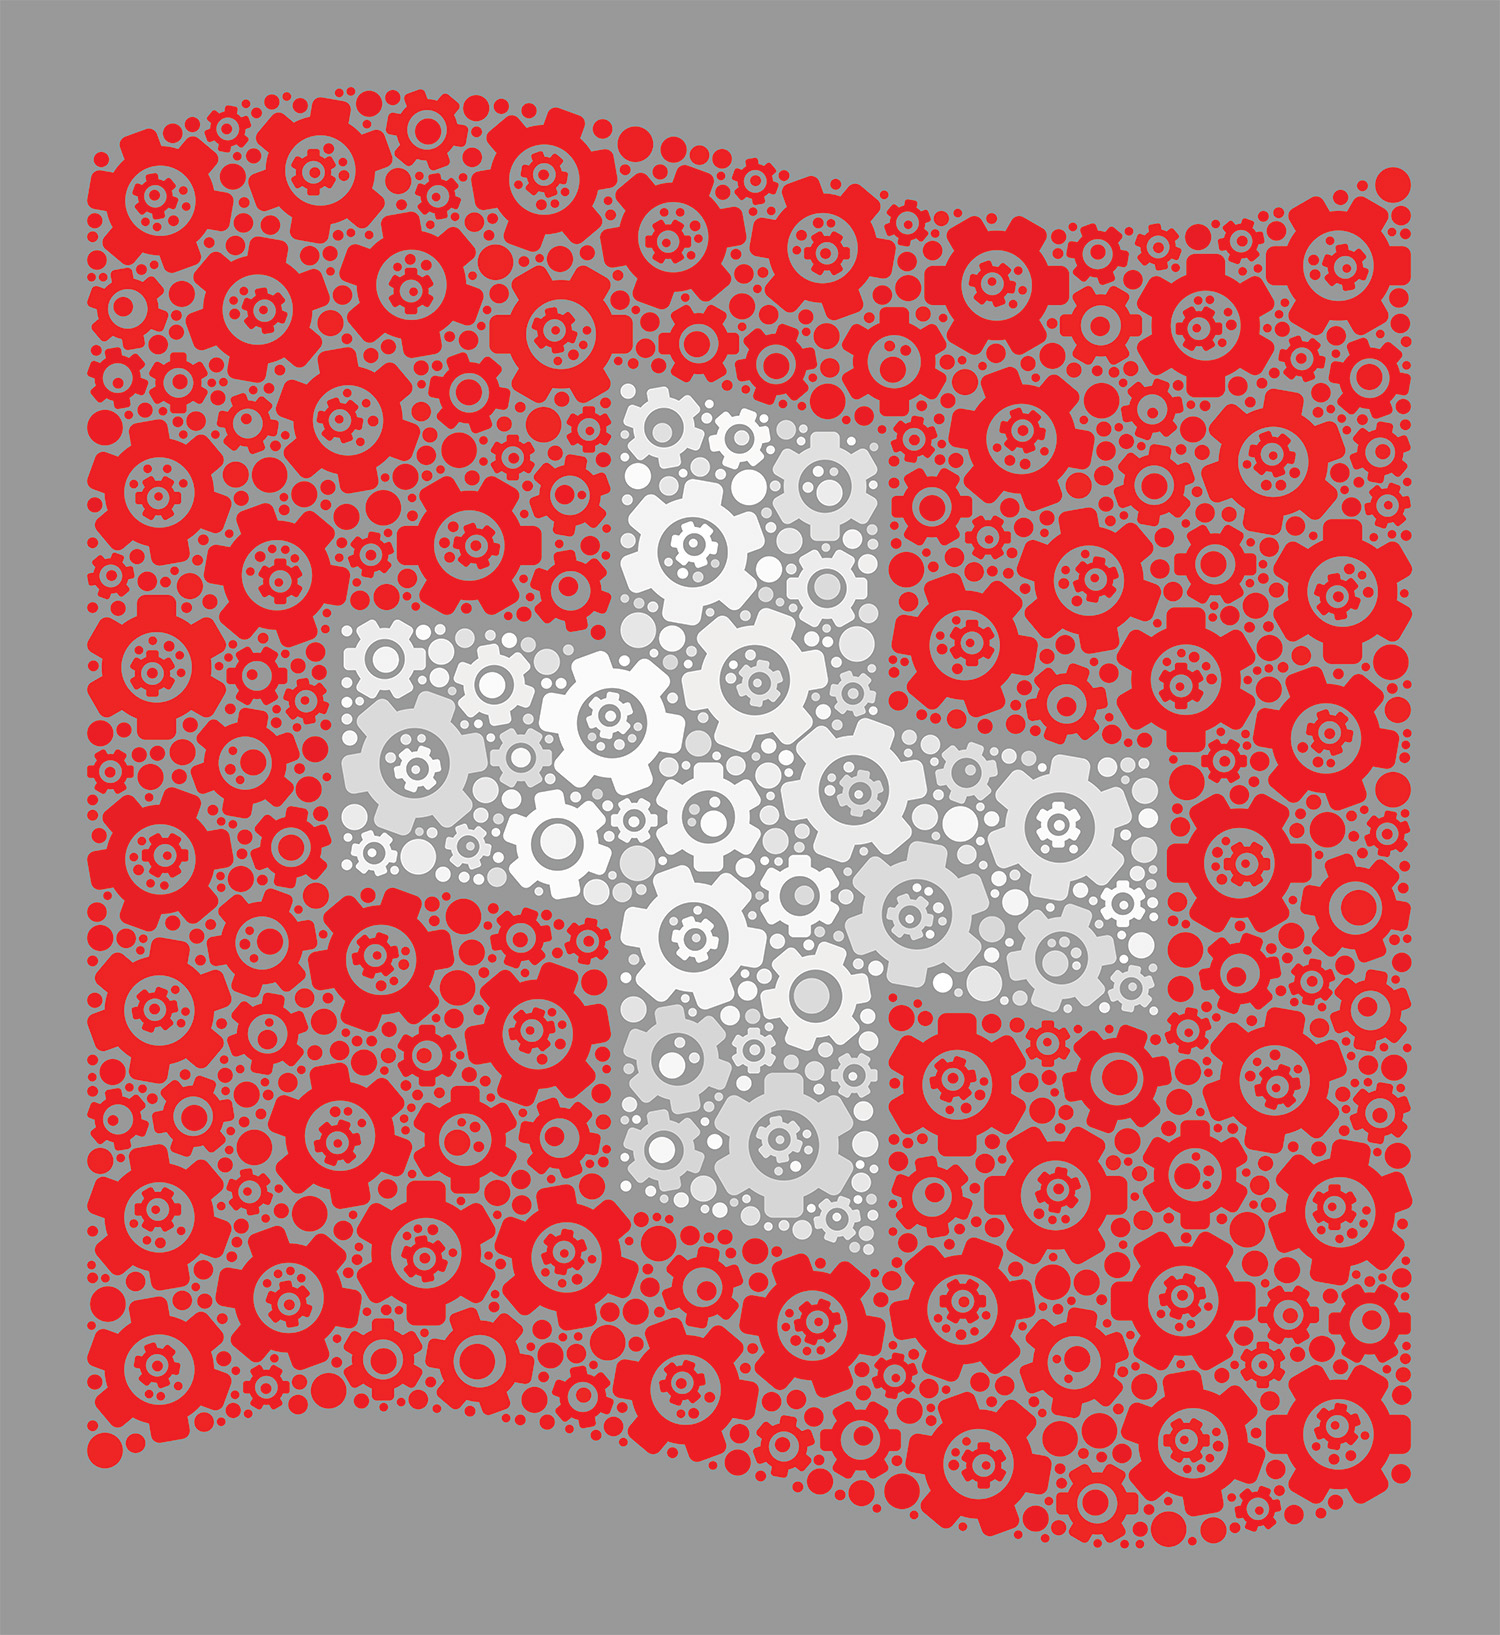 L'Écosystème suisse de recyclage des textiles est un réseau constitué de fabricants de tissus et de matières textiles, de prestataires en collecte et tri des déchets, de revendeurs, de marques et d'entreprises technologiques. (Image Source : shutterstock_